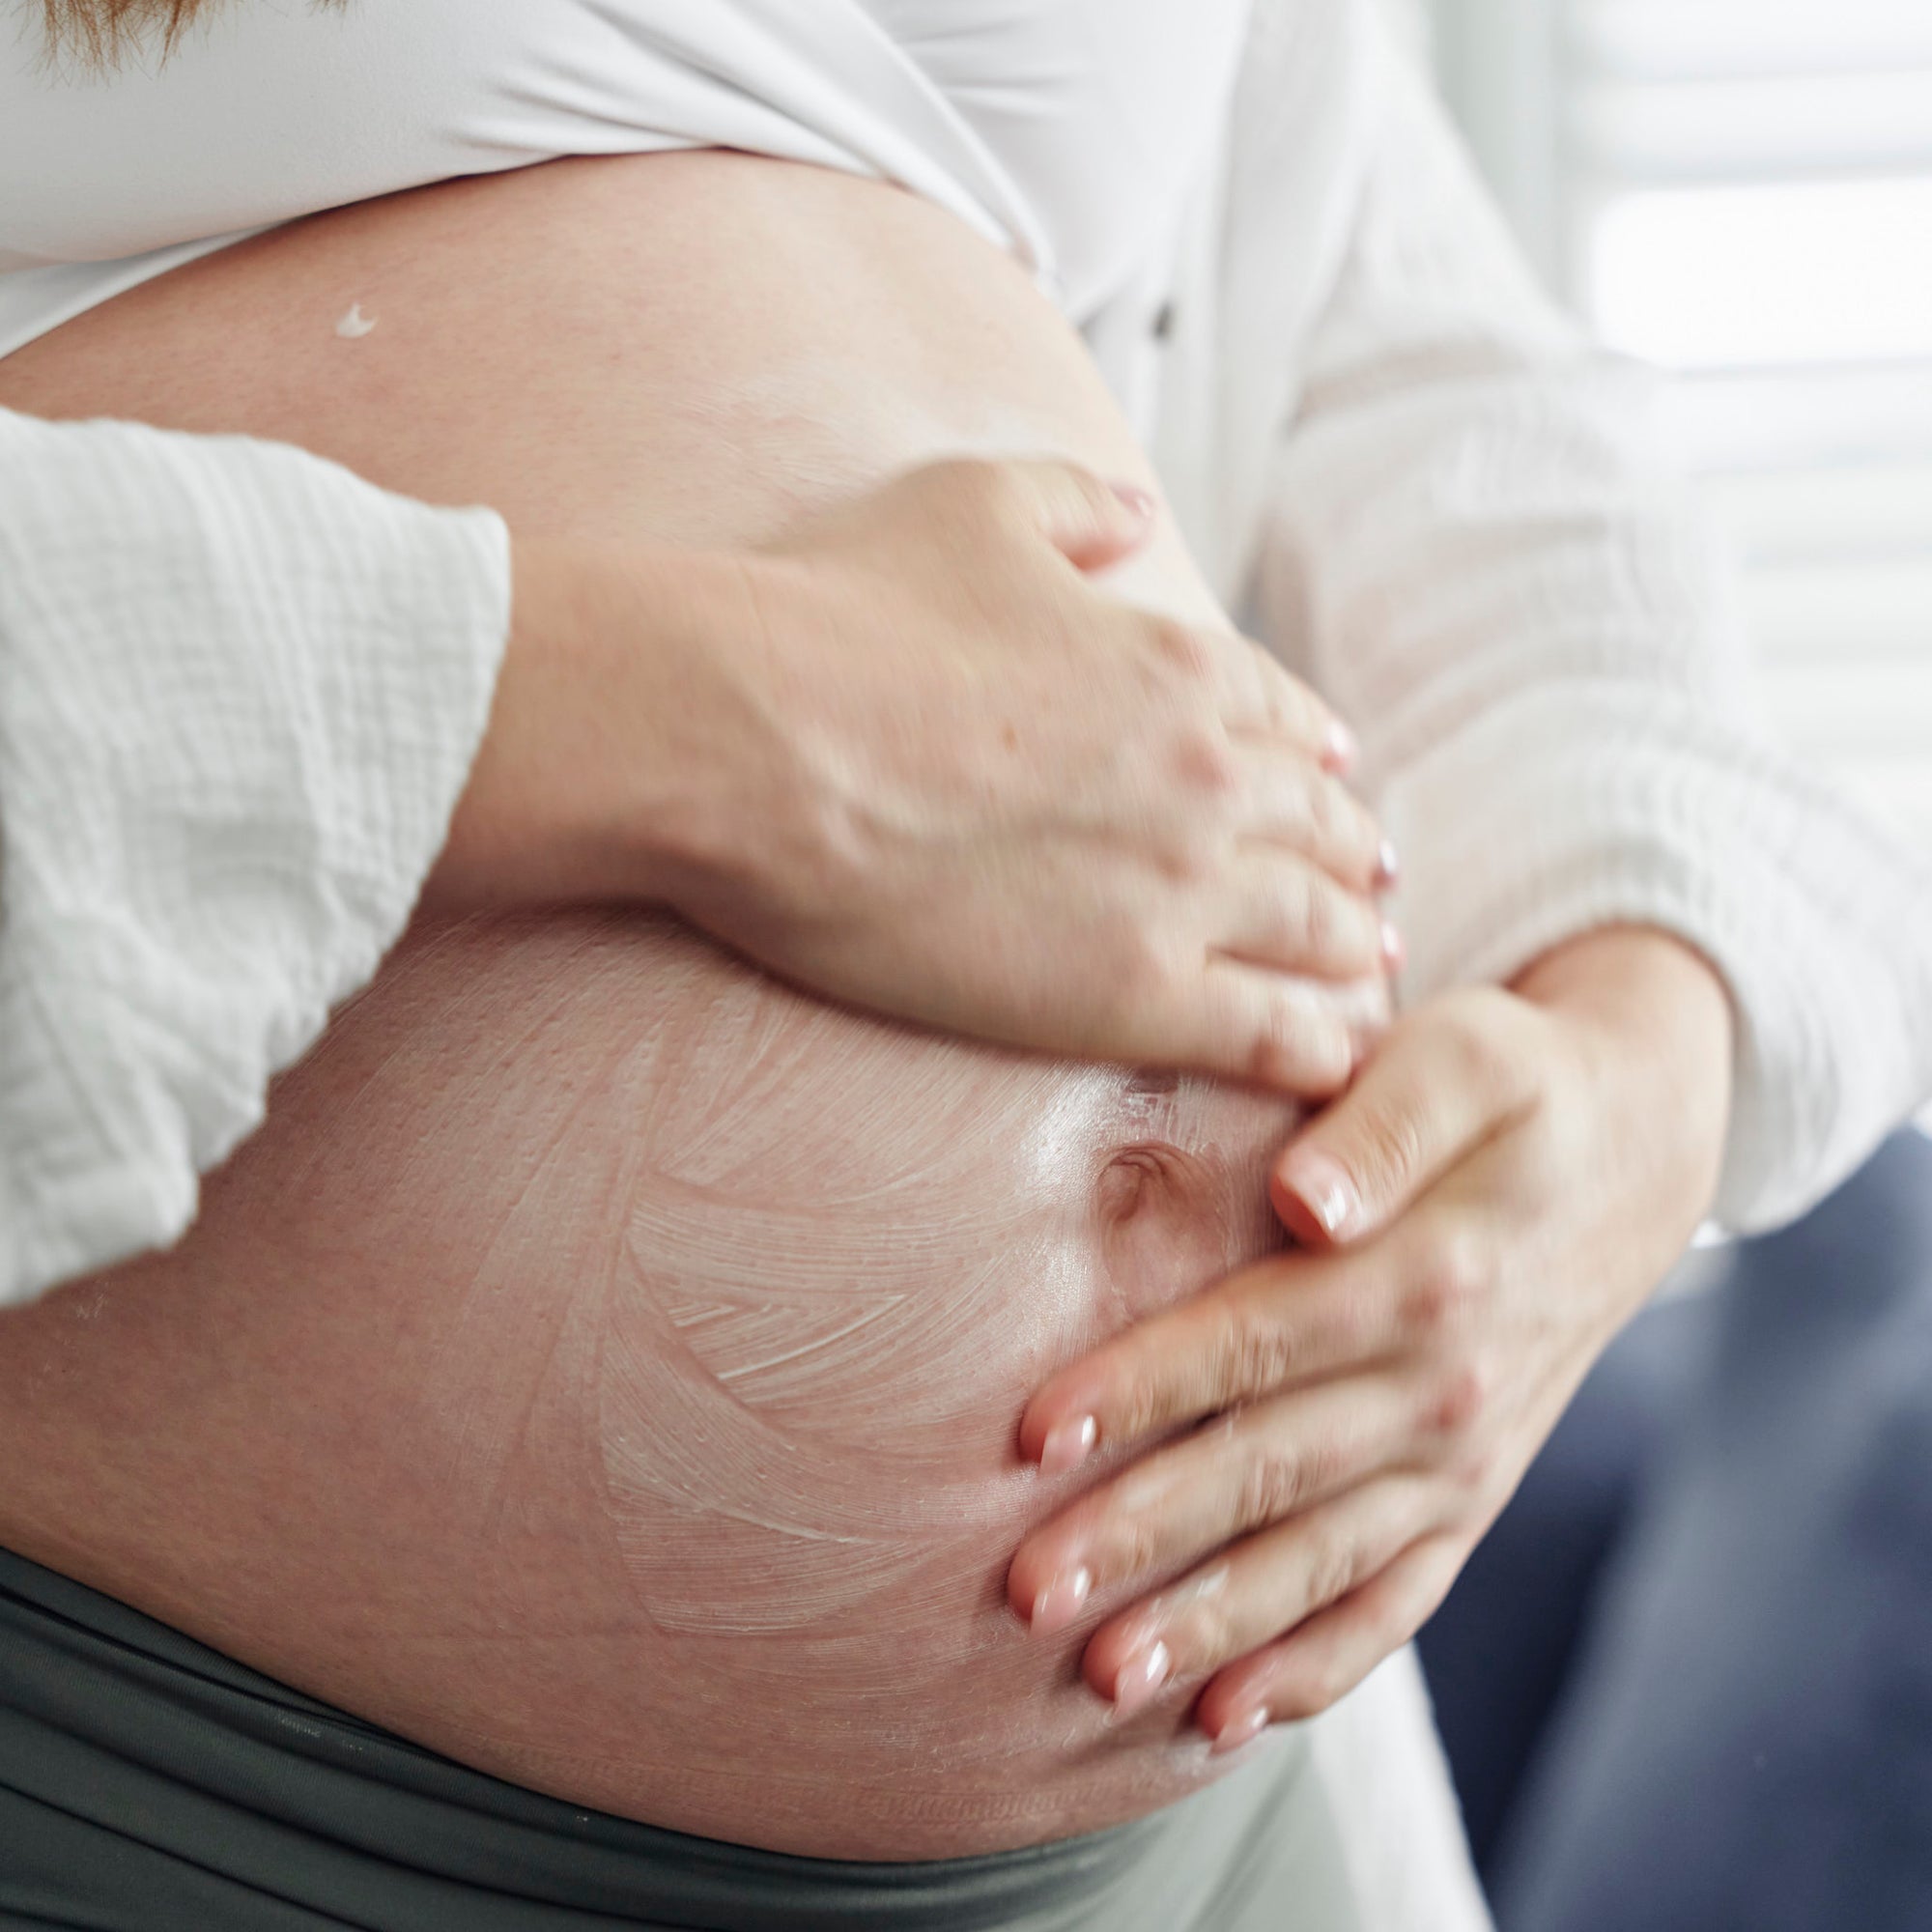 Mumma's Pregnancy and Postpartum Moisturiser